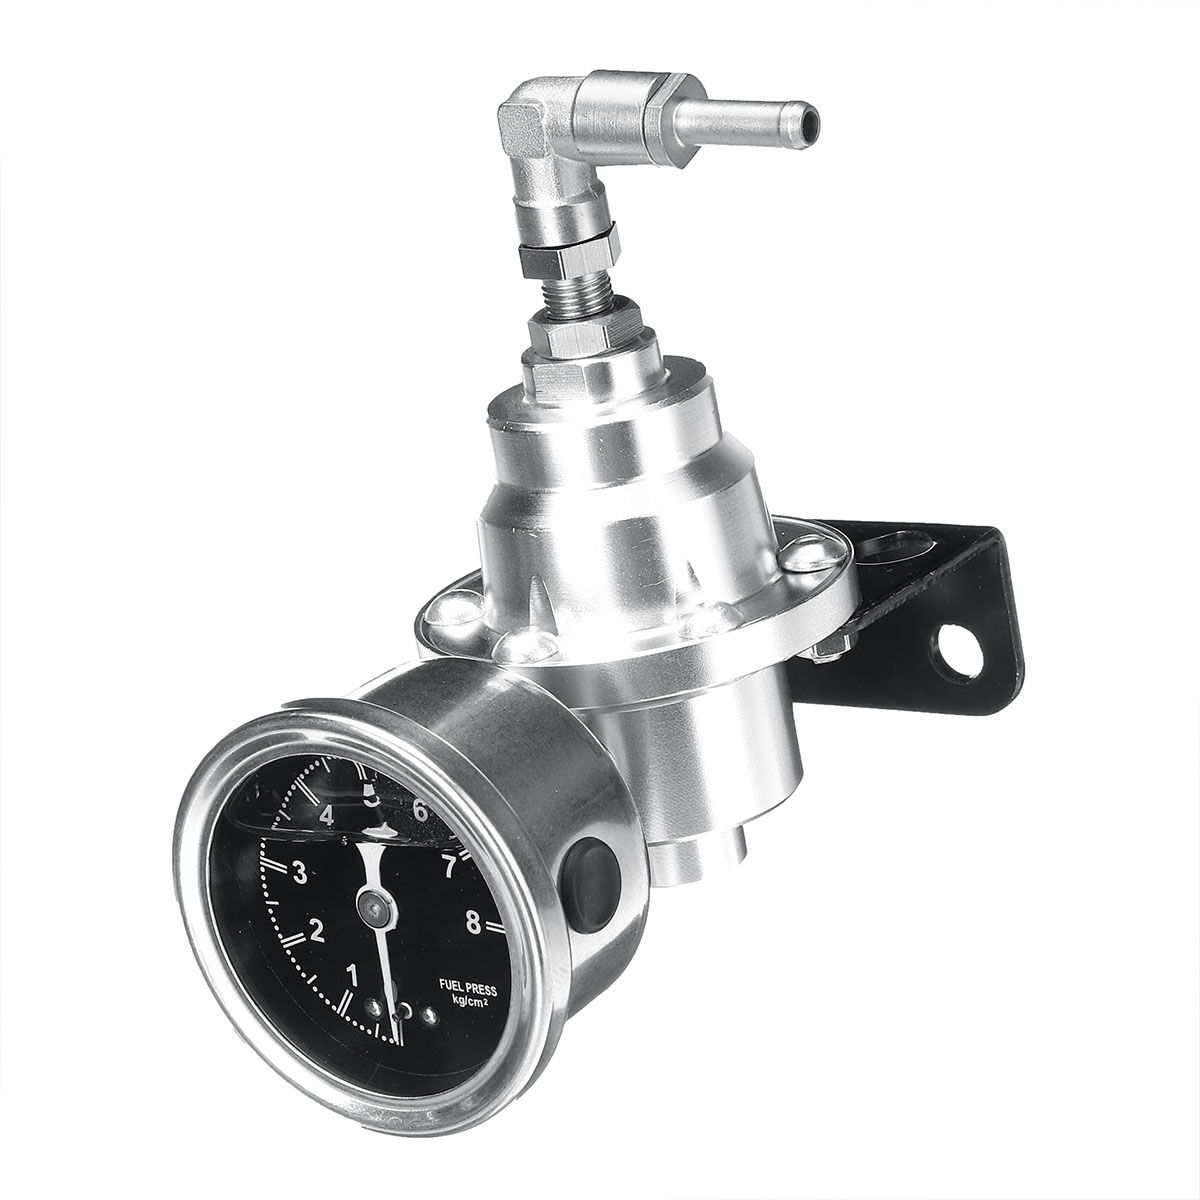 Universal-Adjustable-Aluminum-Auto-Pressure-Regulator-Pressure-Gauge-Tools-Kit-1434972